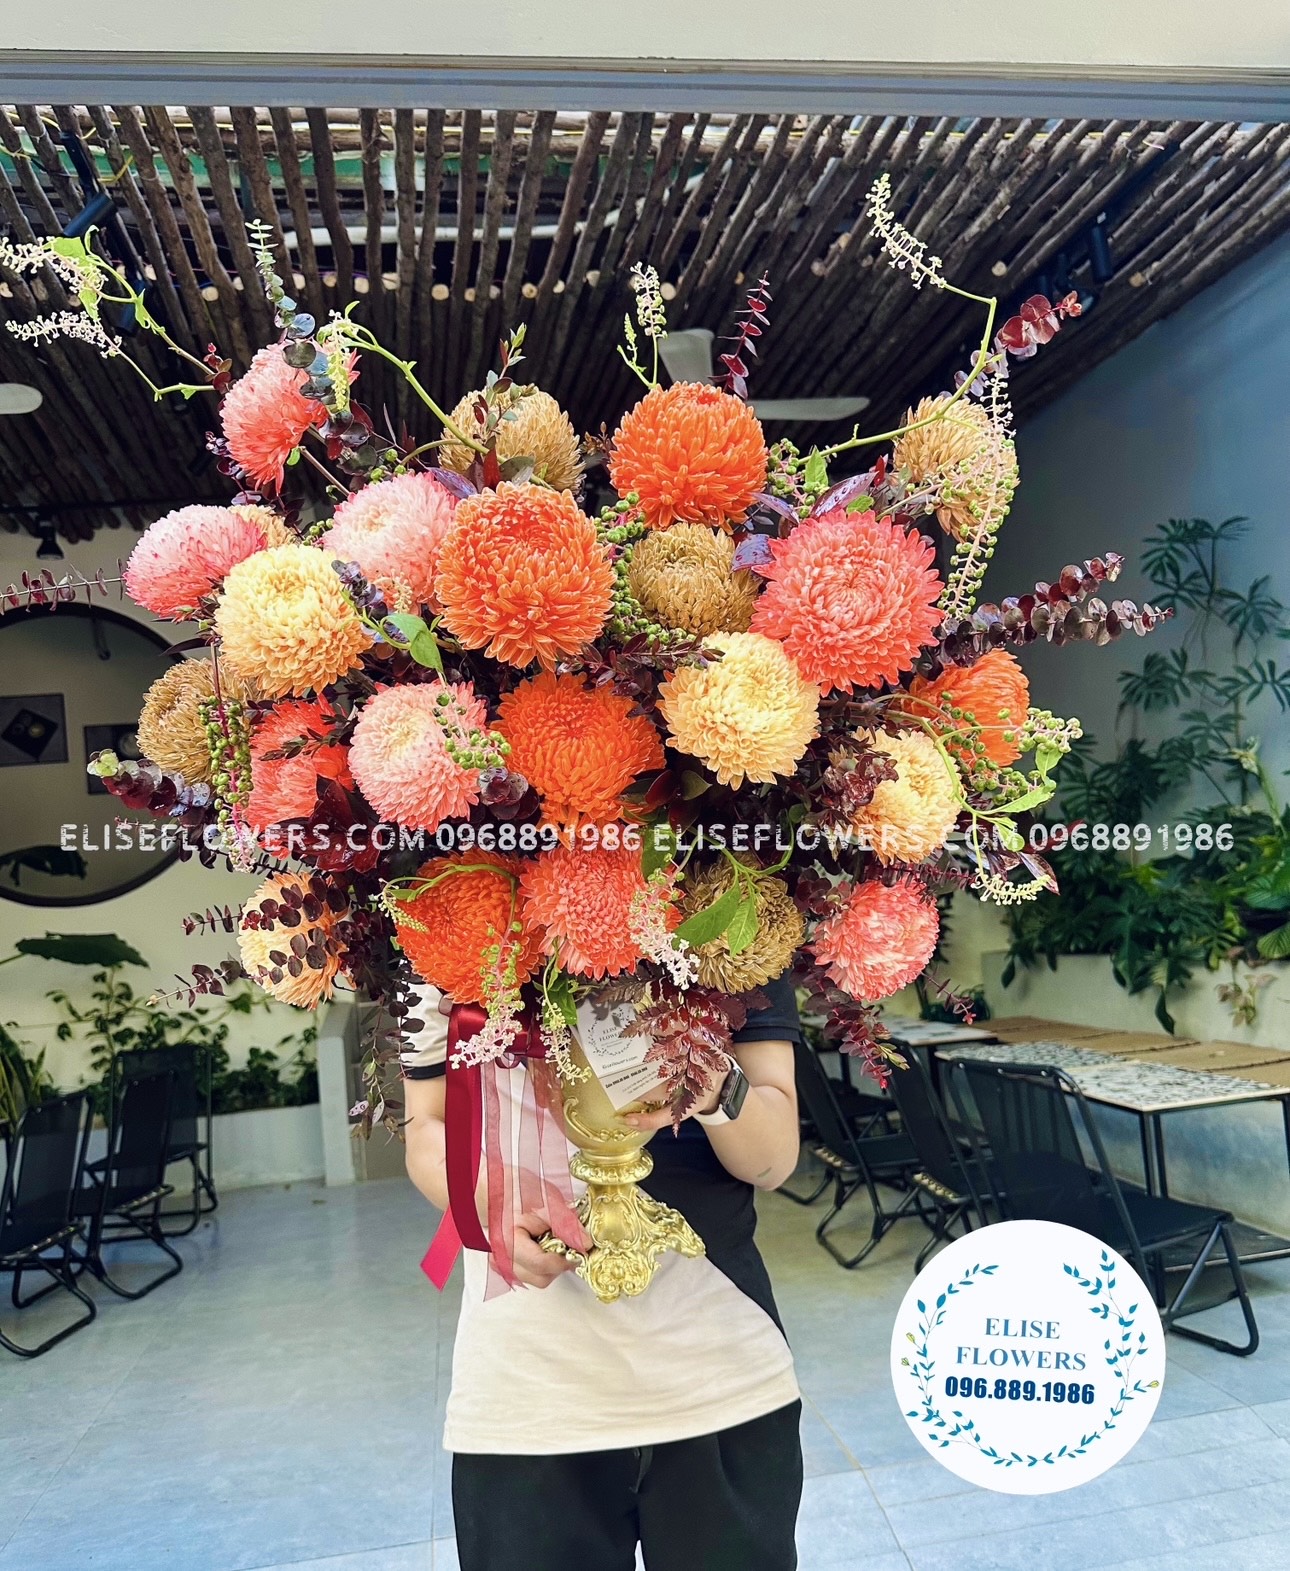 HOA SINH NHẬT HOÀNG MAI . Hoa sinh nhật đẹp ở quận Hoàng Mai  .Shop hoa tươi quận Hoàng Mai